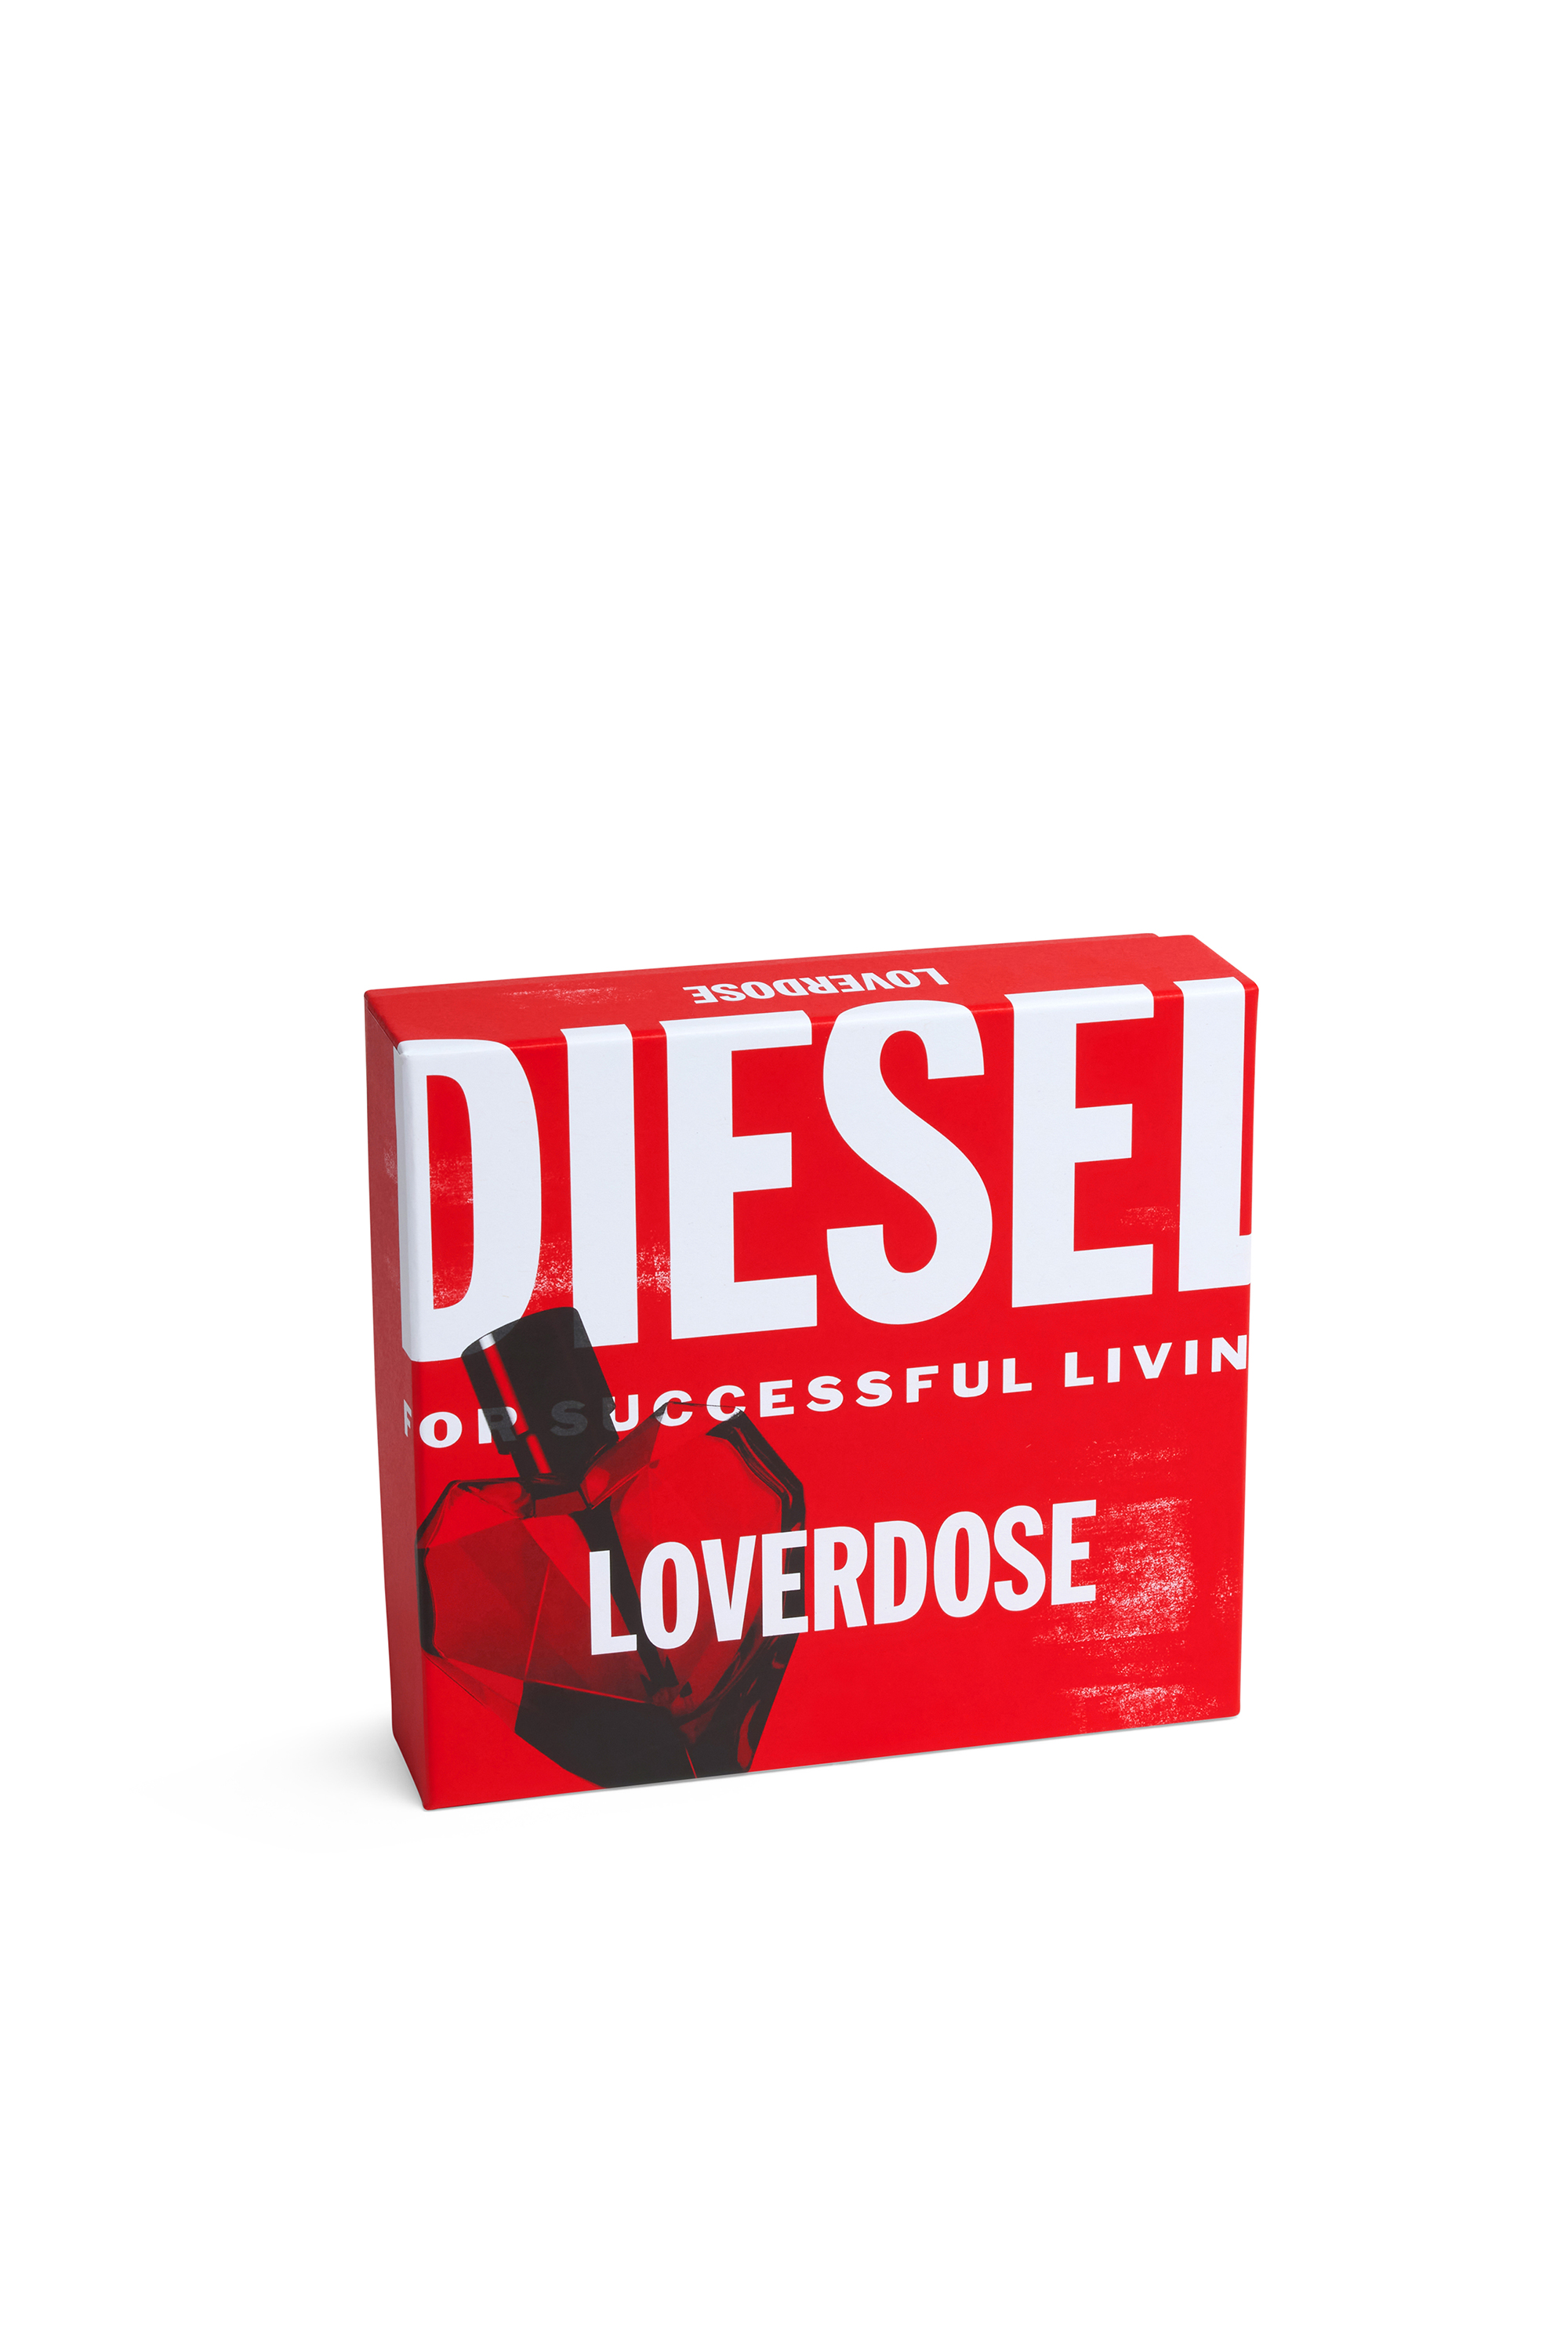 Diesel - LOVERDOSE 30 ML GIFT SET, Violet - Image 3